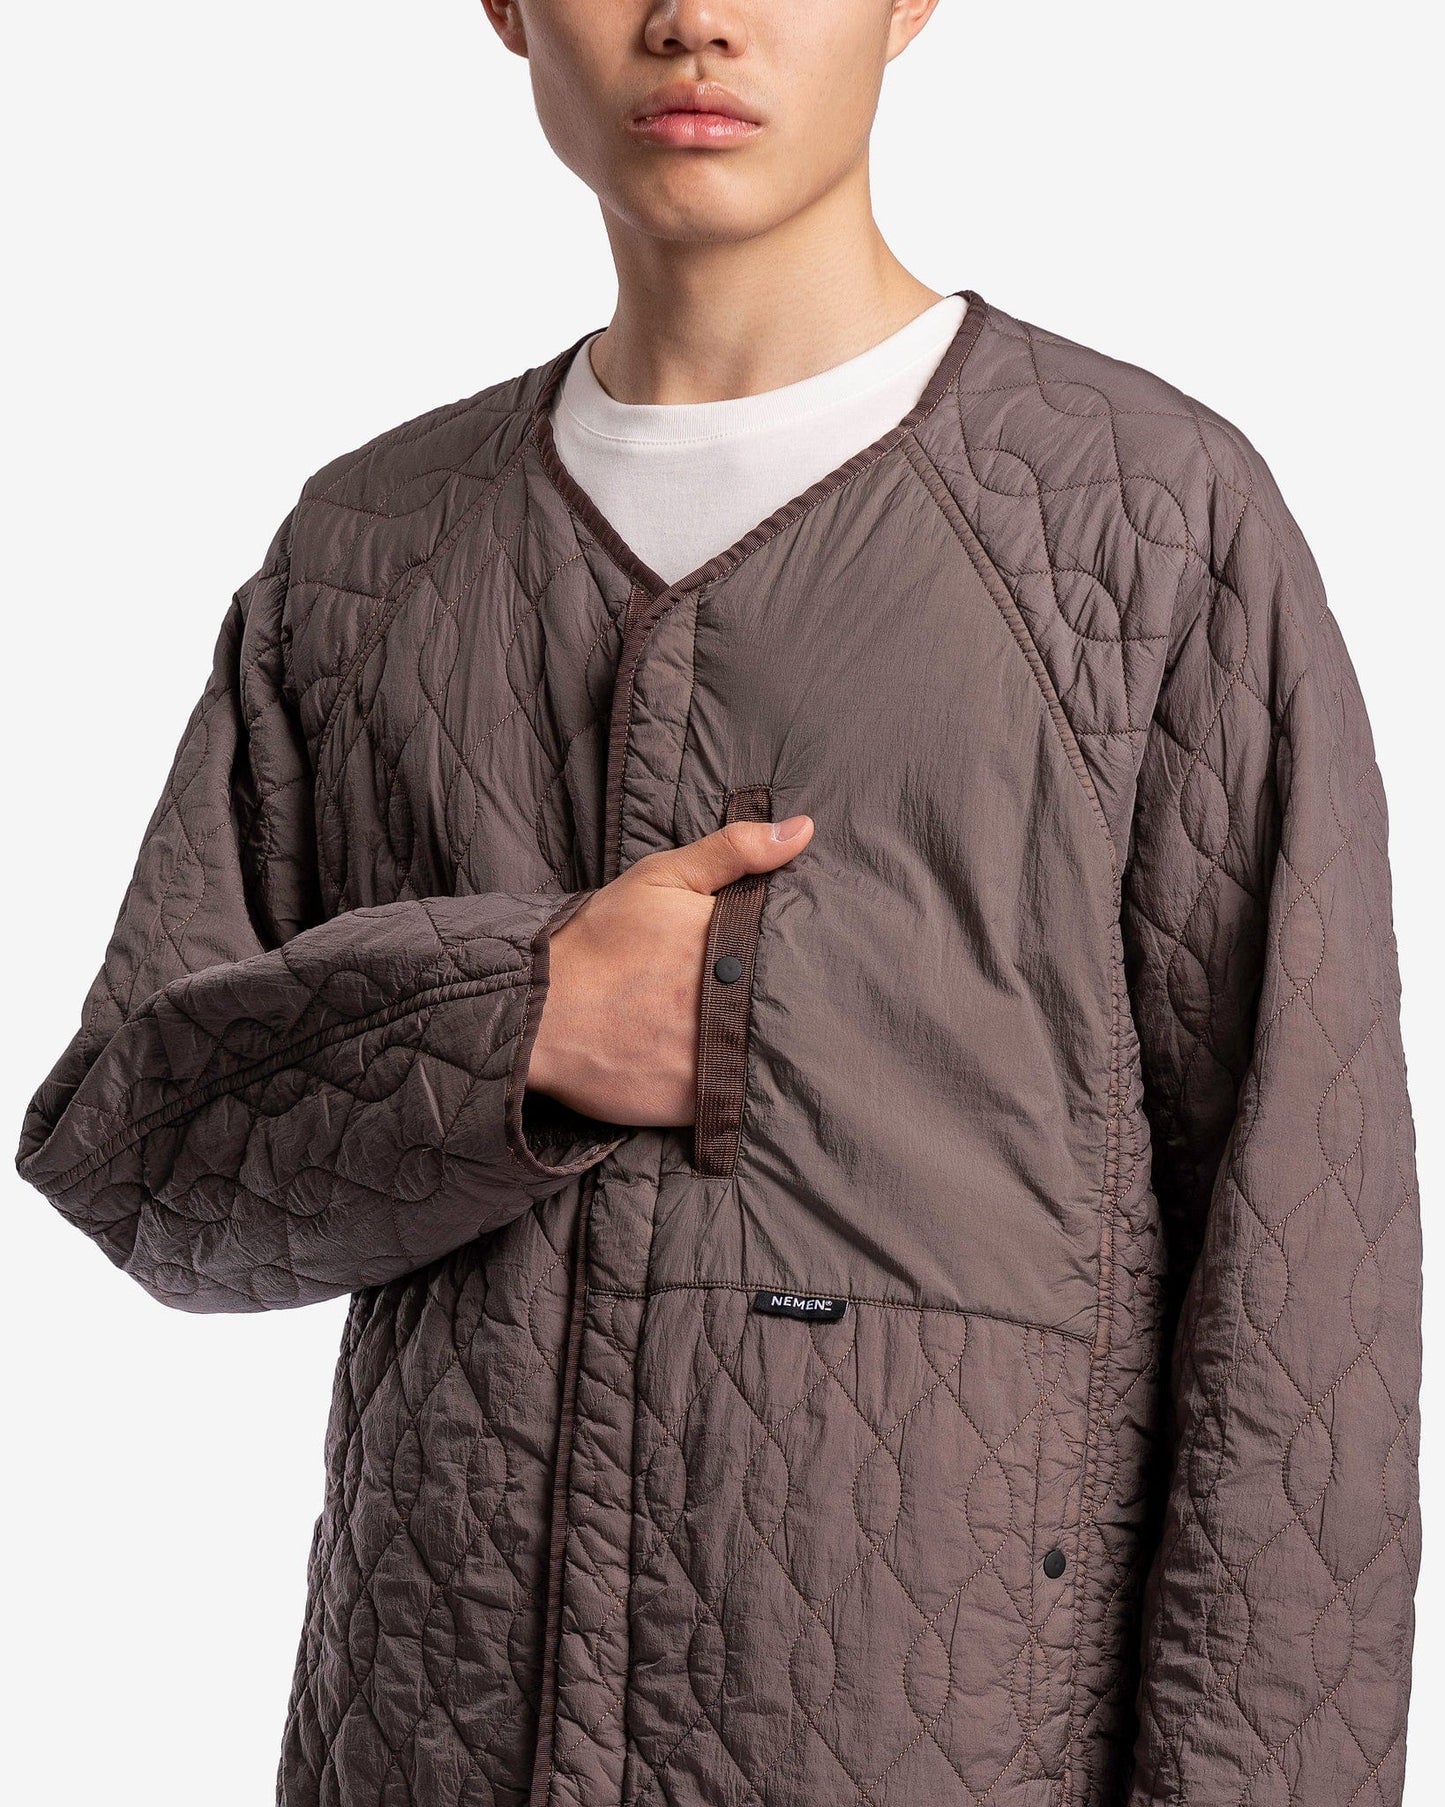 Nemen Men's Jackets Nover Quilted Liner in Medium Grey